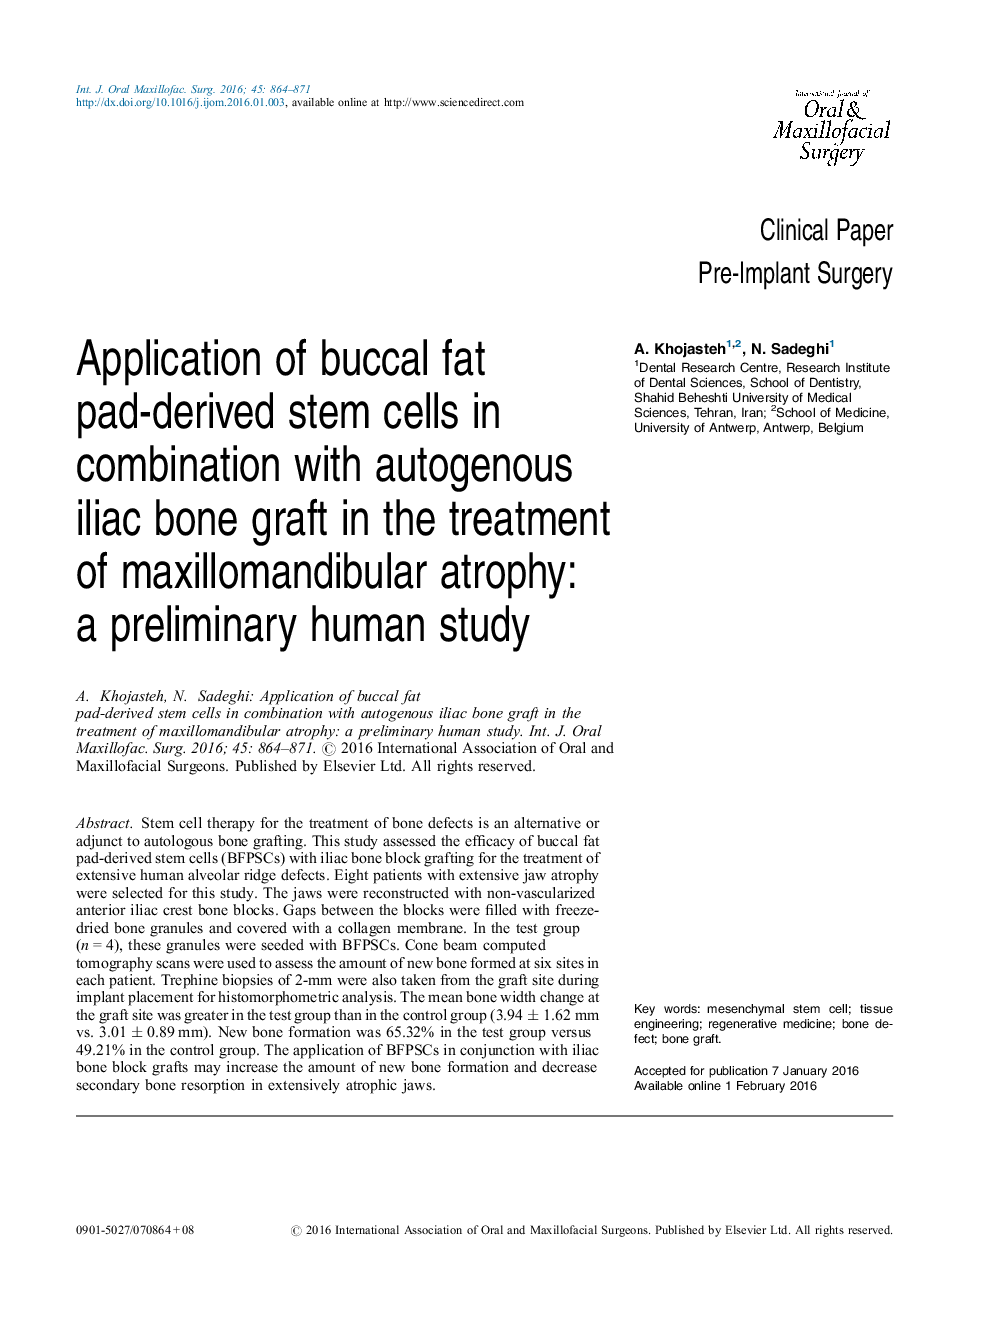 استفاده از سلول های بنیادی مشتق از چربی باکال در ترکیب با پیوند استخوان یونجه اتوژن در درمان آتروفی ماگزیلوماندیبولار: یک مطالعه اولیه انسانی 